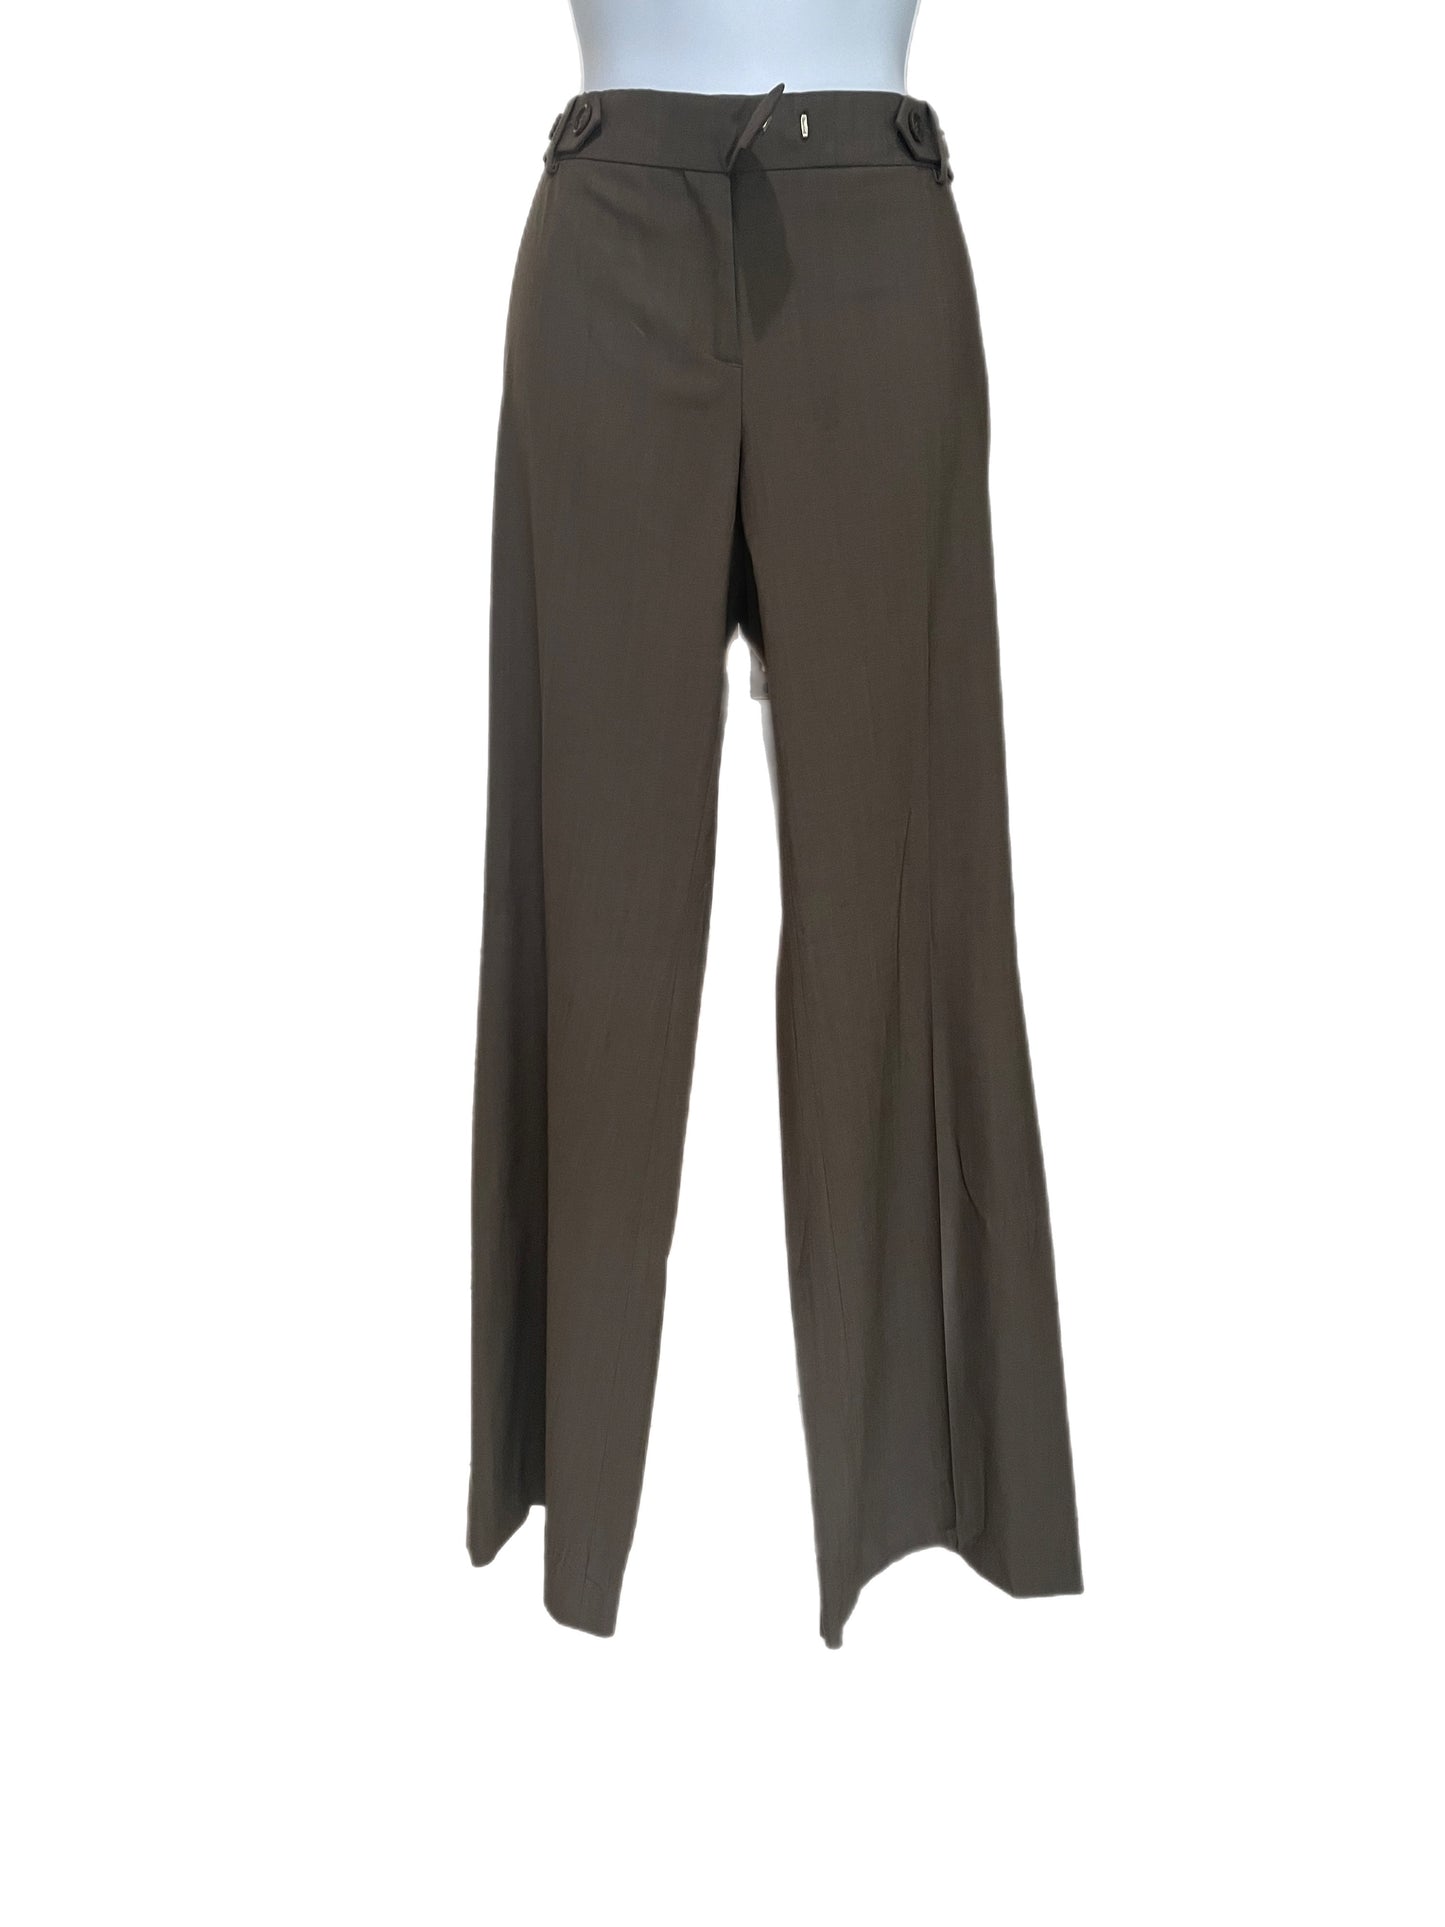 Pants-Slacks w/Straight legs-Heather Brown Wool Material-By Jaidan